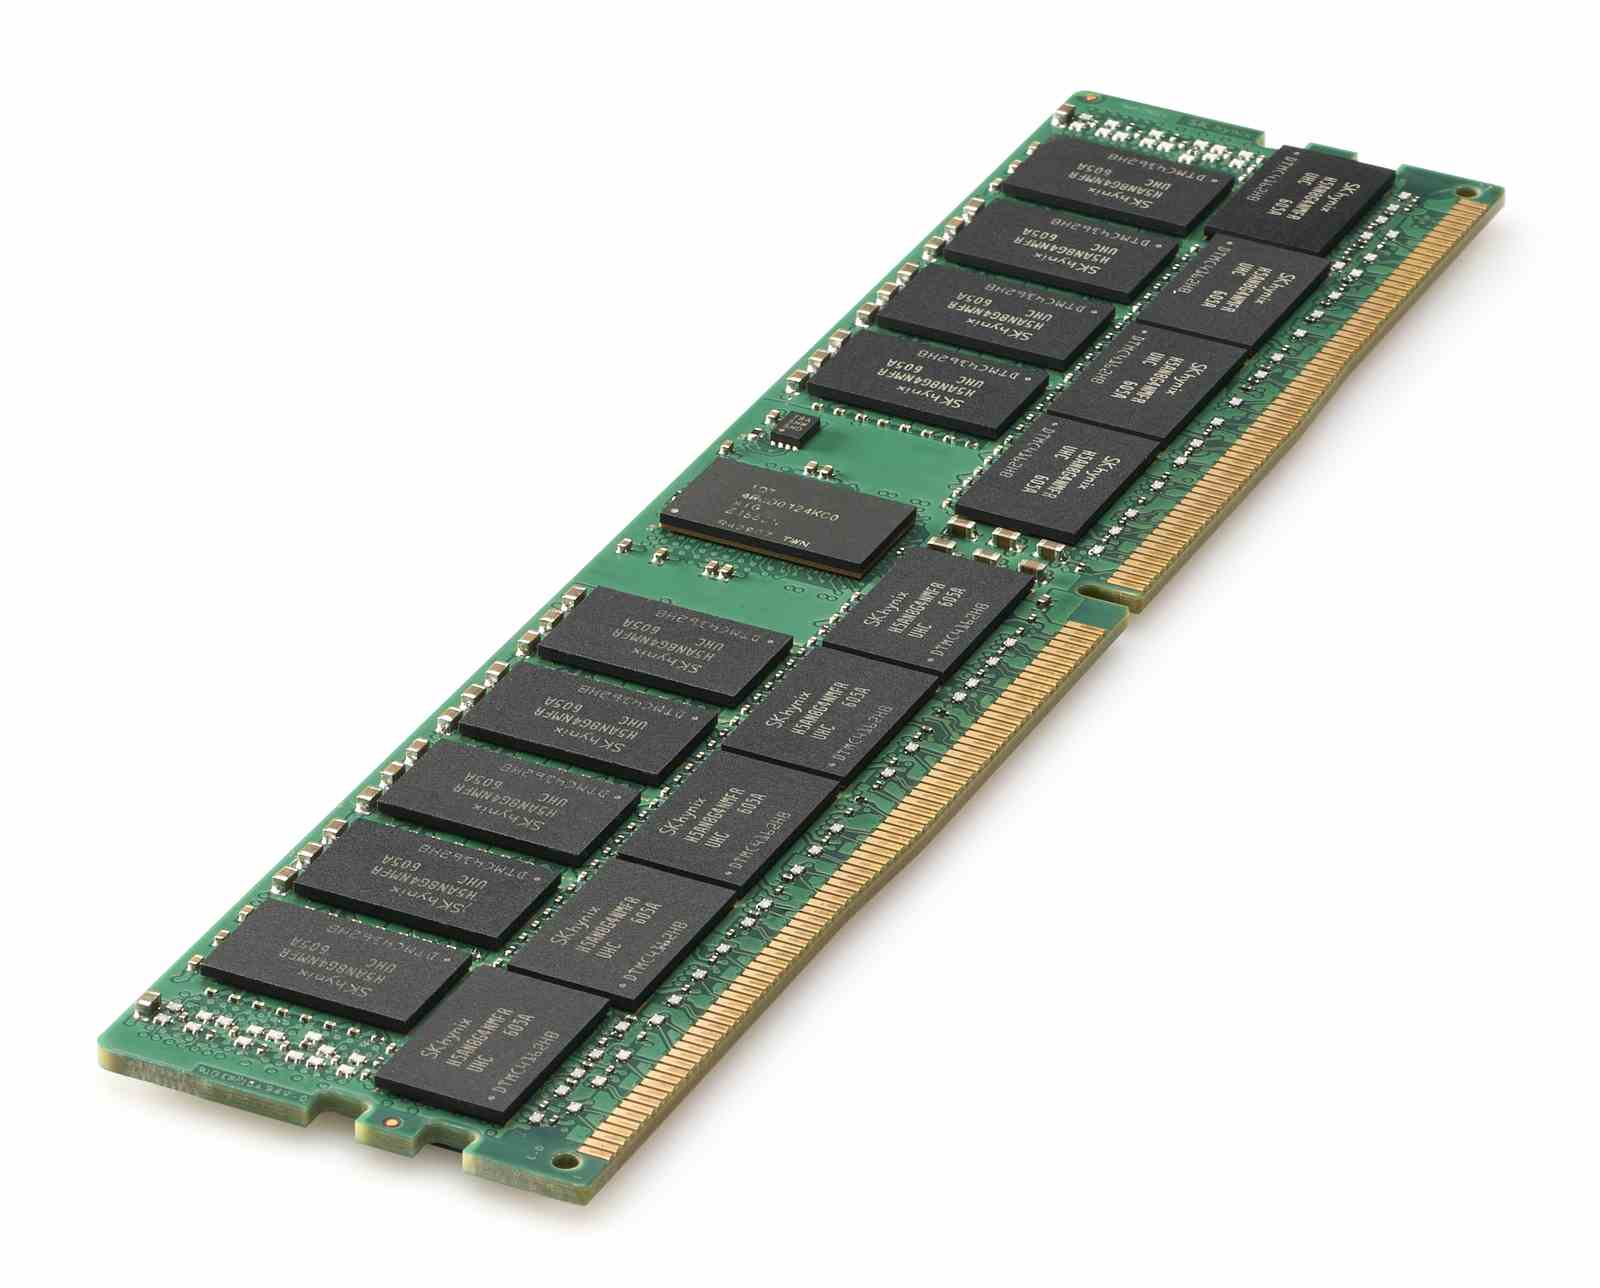 HPE 32GB (1x32GB) Dual Rank x4 DDR4-2666 CAS-19-19-19 Registered Memory Kit G10 815100-B21 RENEW0 